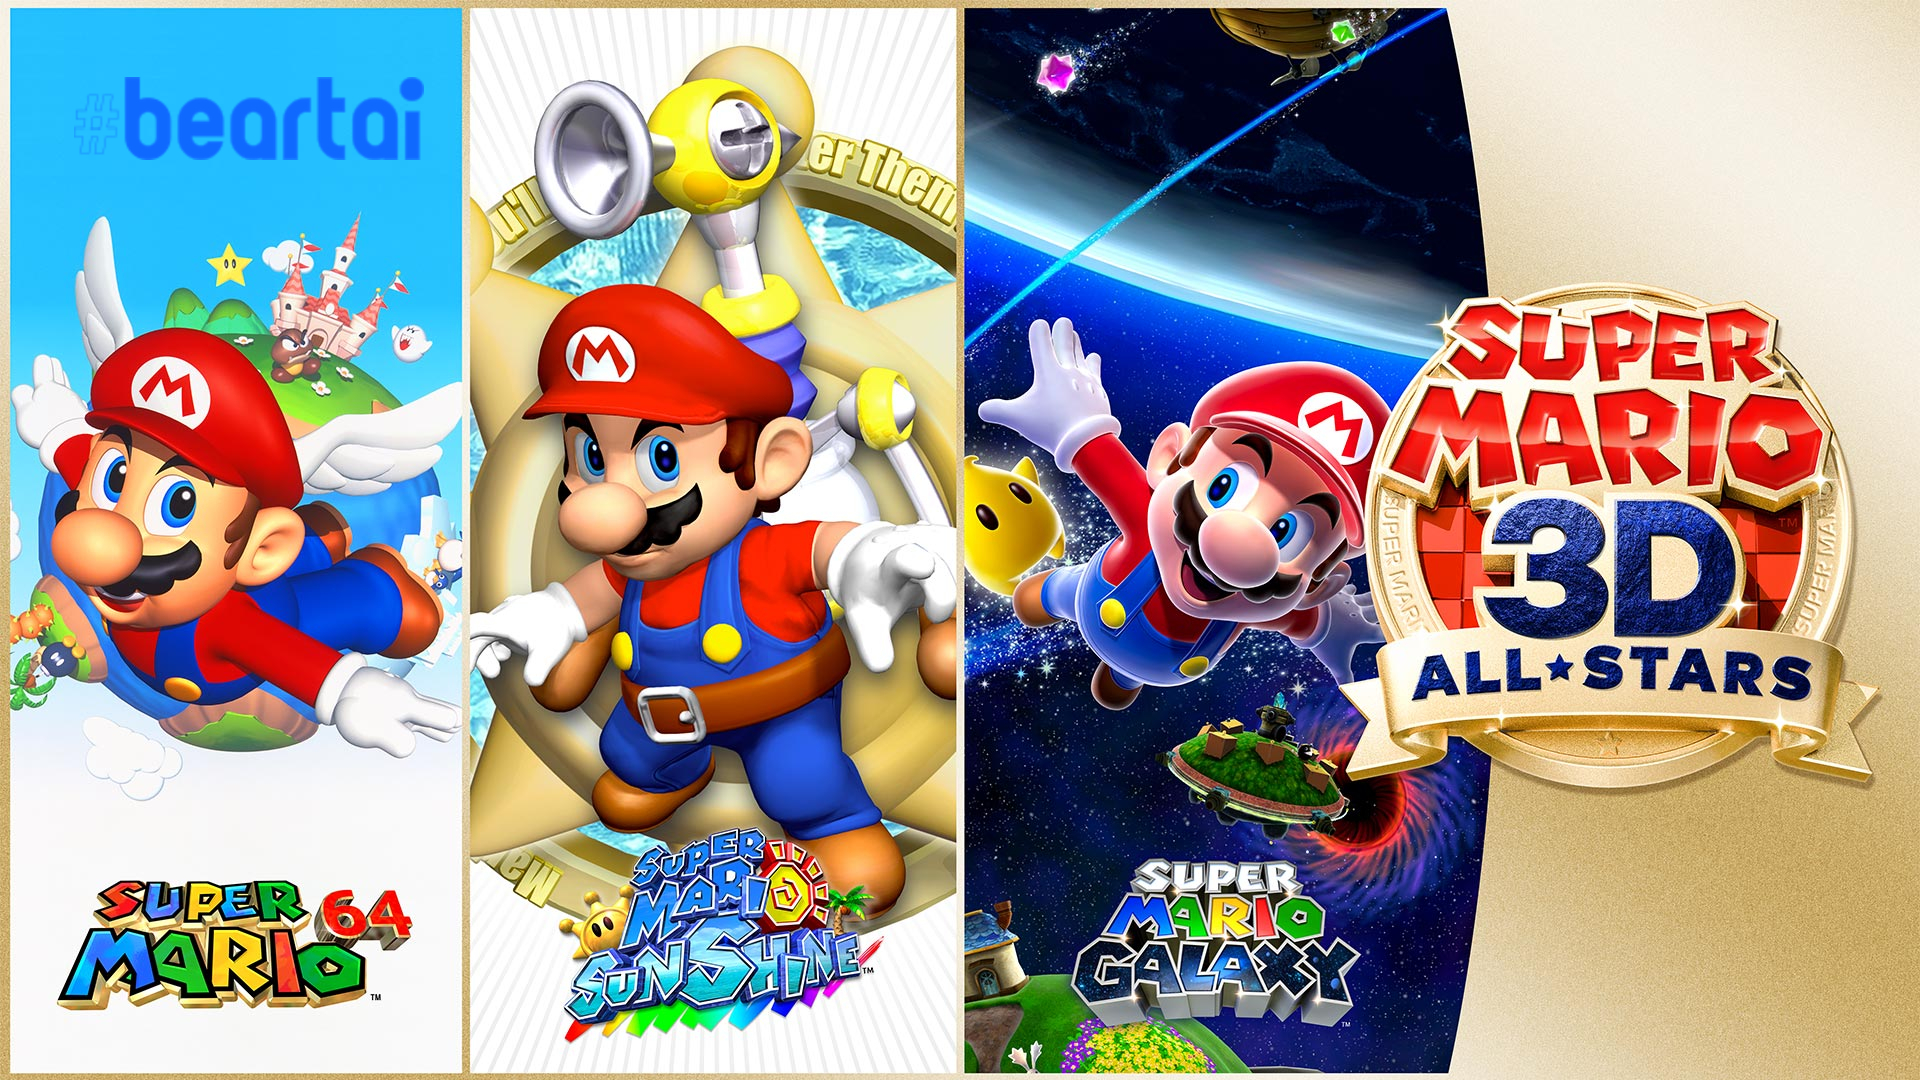 Super Mario 3D All-Stars ทำยอดขายไปแล้ว 5.21 ล้านชุด ใช้เวลาเพียง 12 วัน